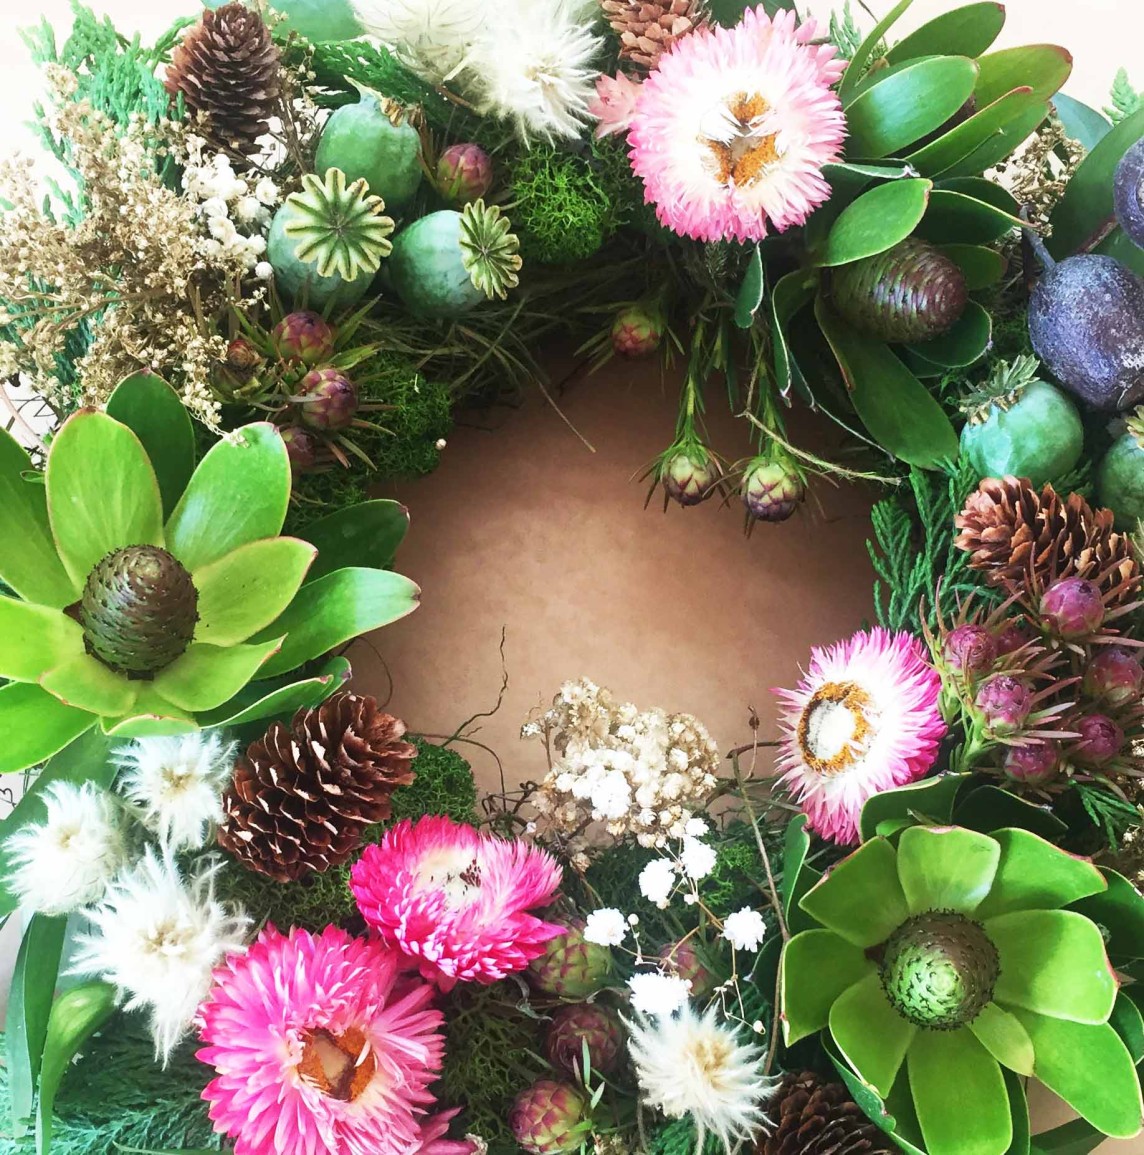 Flower Workshop: Long-lasting Christmas wreath